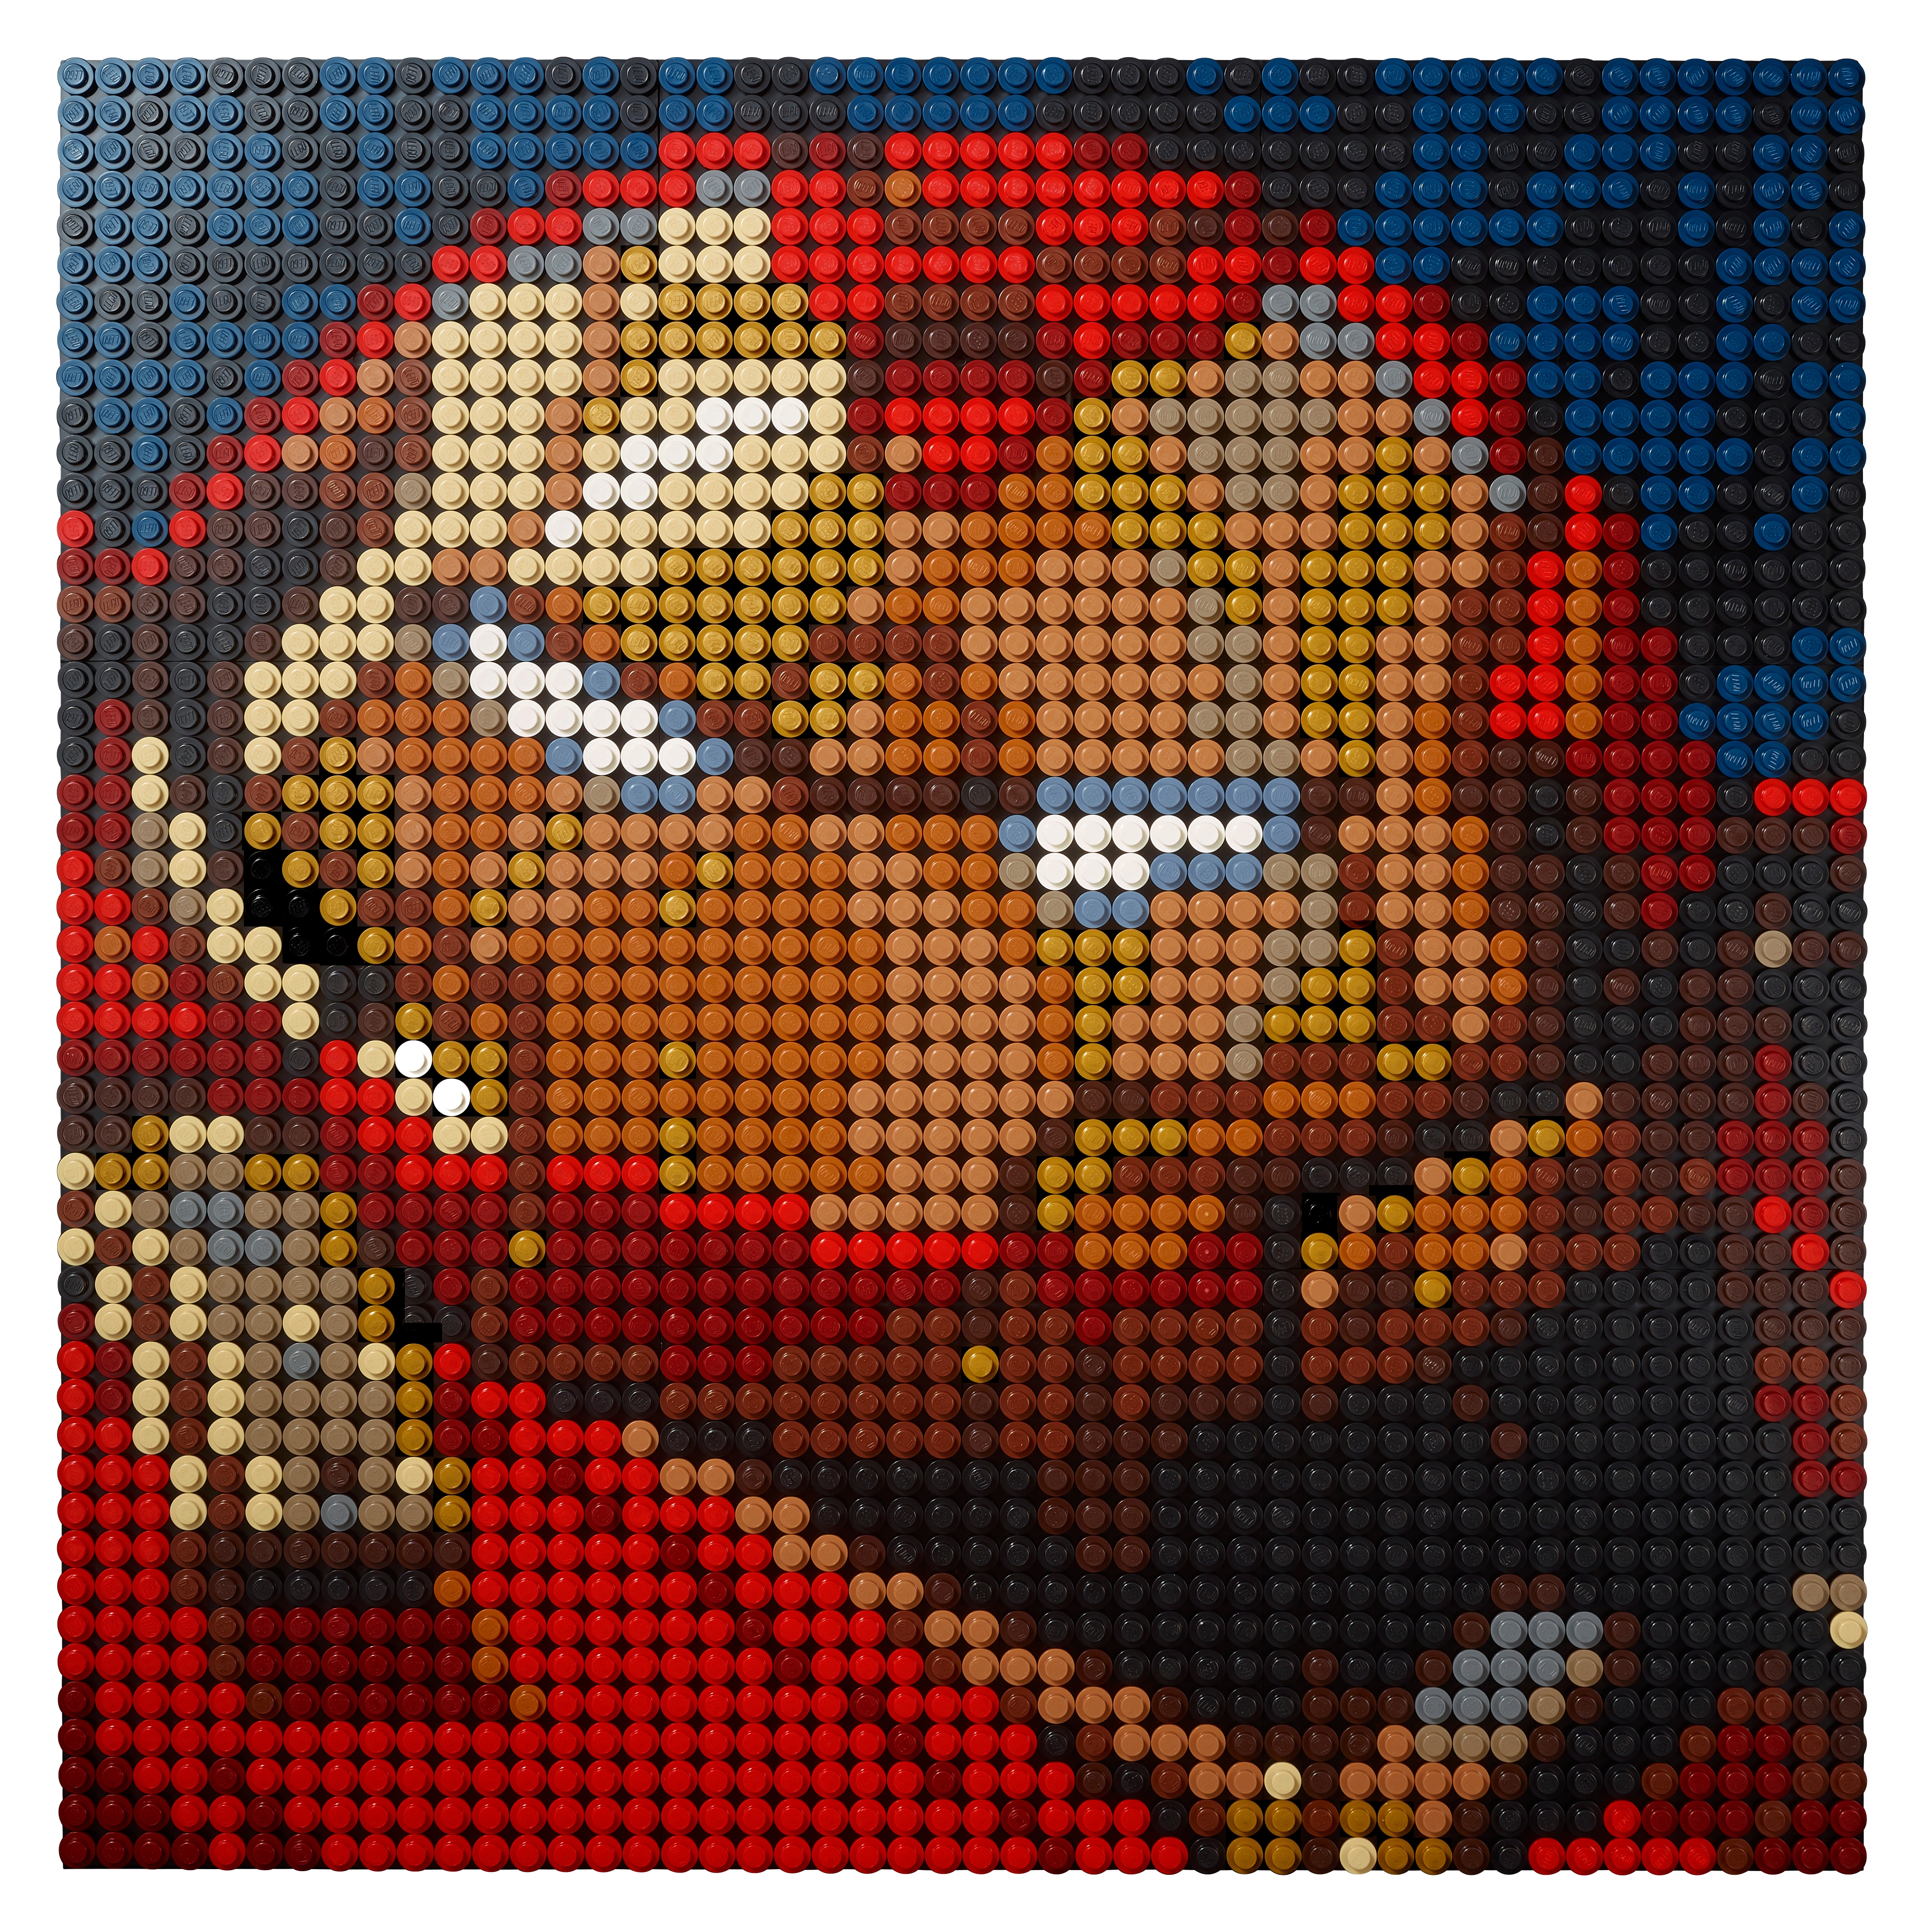 LEGO ART Iron Man Le pire Set de Lego ? Review du tableau en Lego 31199 